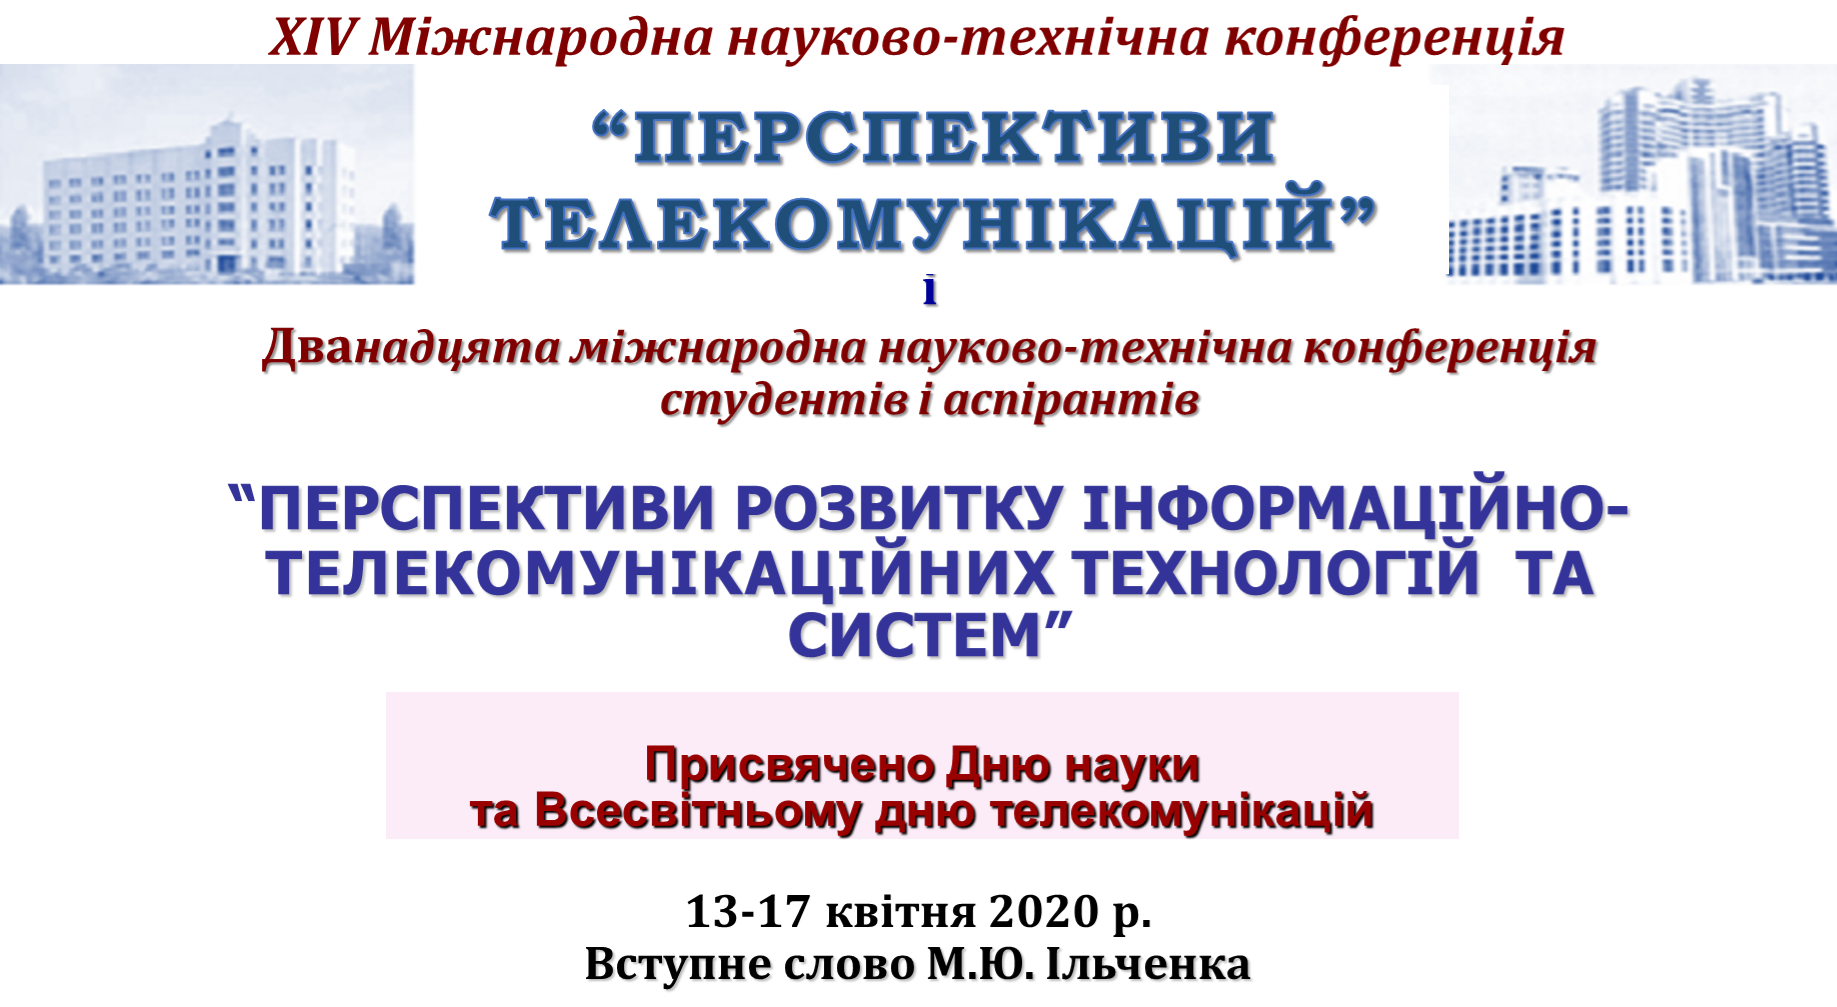 Презентація Ільченко фото 2020